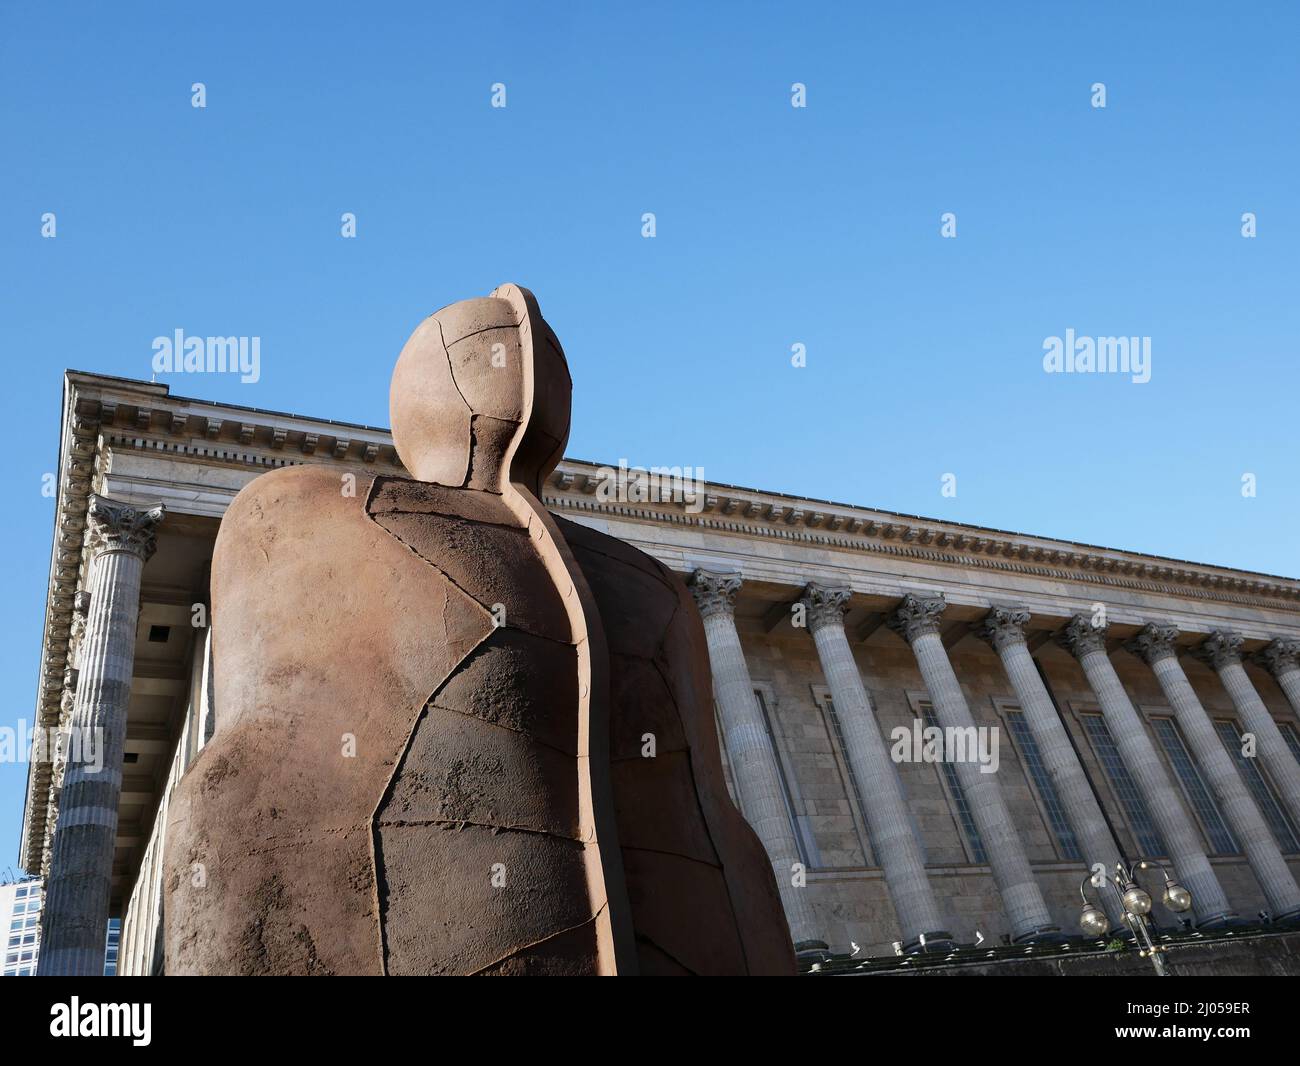 La escultura de Iron:Man de Antony Gormley. Reintegrado durante las obras en Victoria Square en preparación para los Juegos de la Commonwealth de Birmingham 2022. Foto de stock